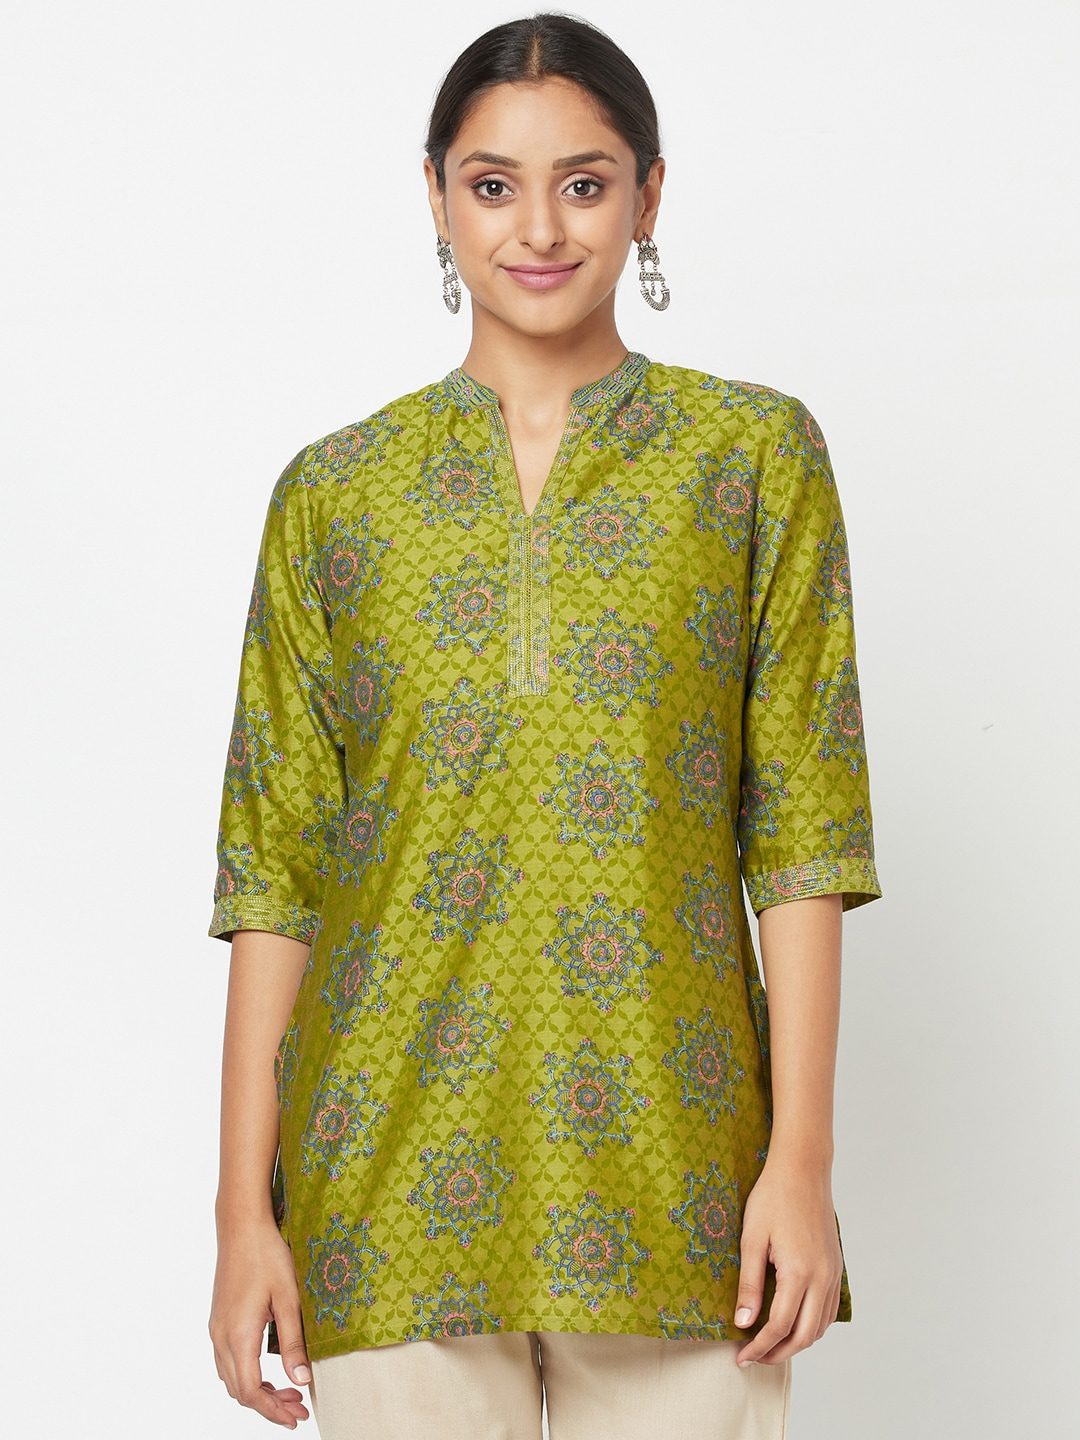 Buy Sayesha Bottle Green Shirt Collar Kurti at Amazonin